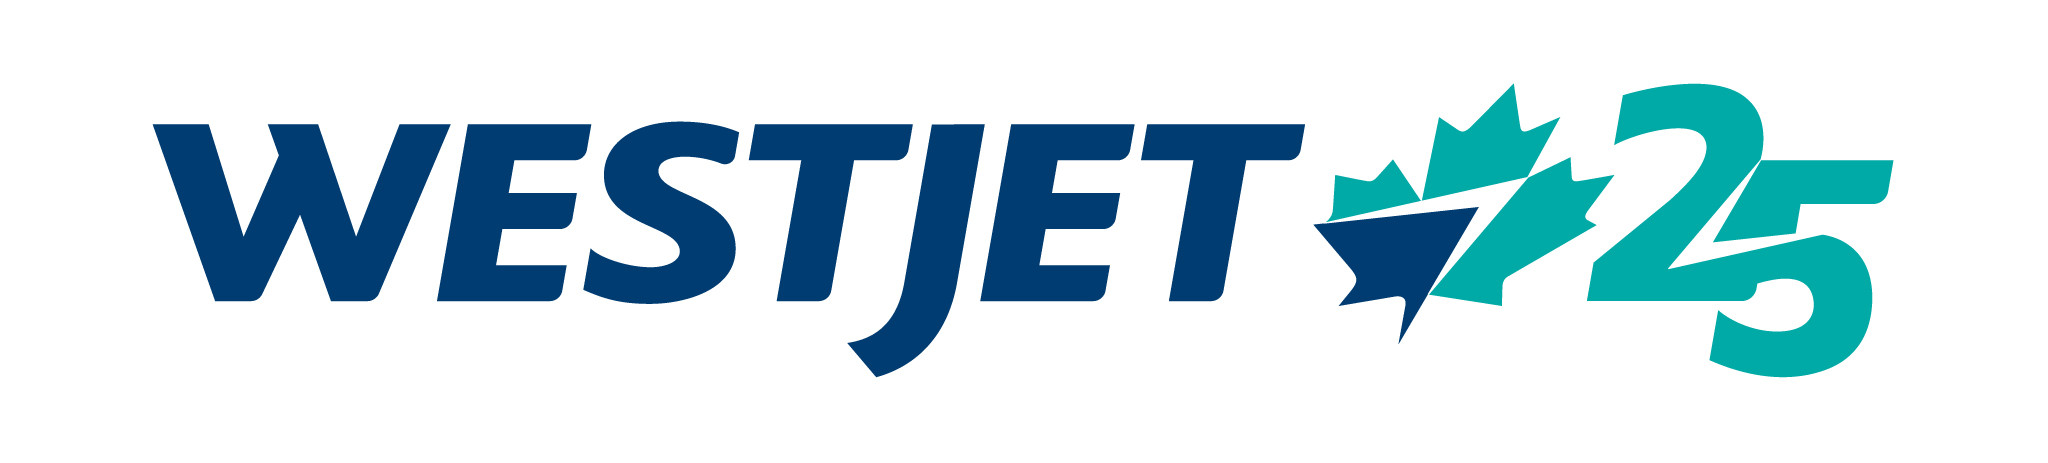 WestJet réduit sa capacité en réponse au régime de dépistage précipité du gouvernement